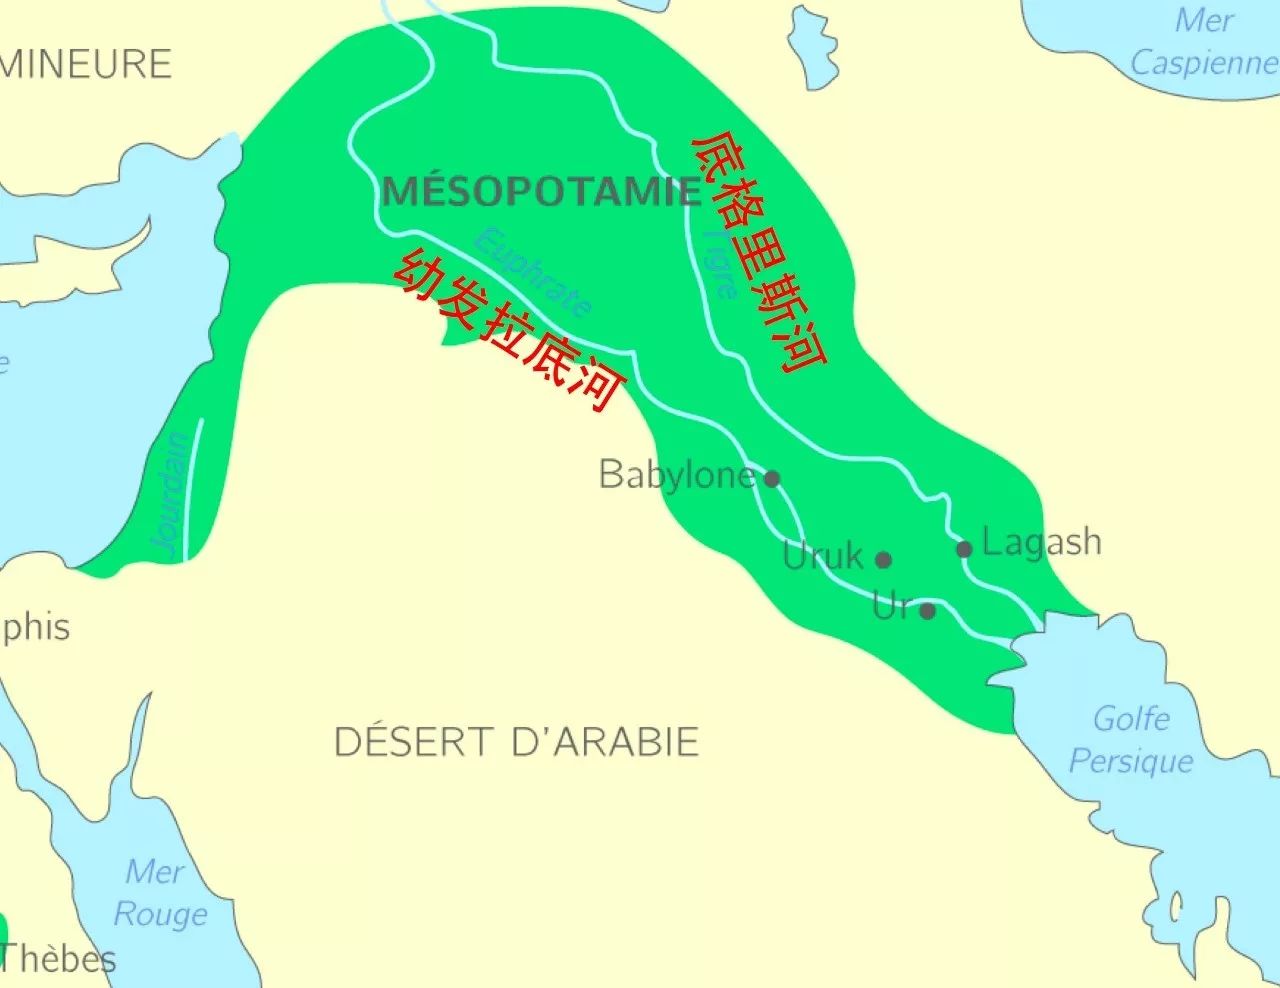 两条大河冲击而形成的平原, 地图:美索不达米亚平原 | mesopotamia